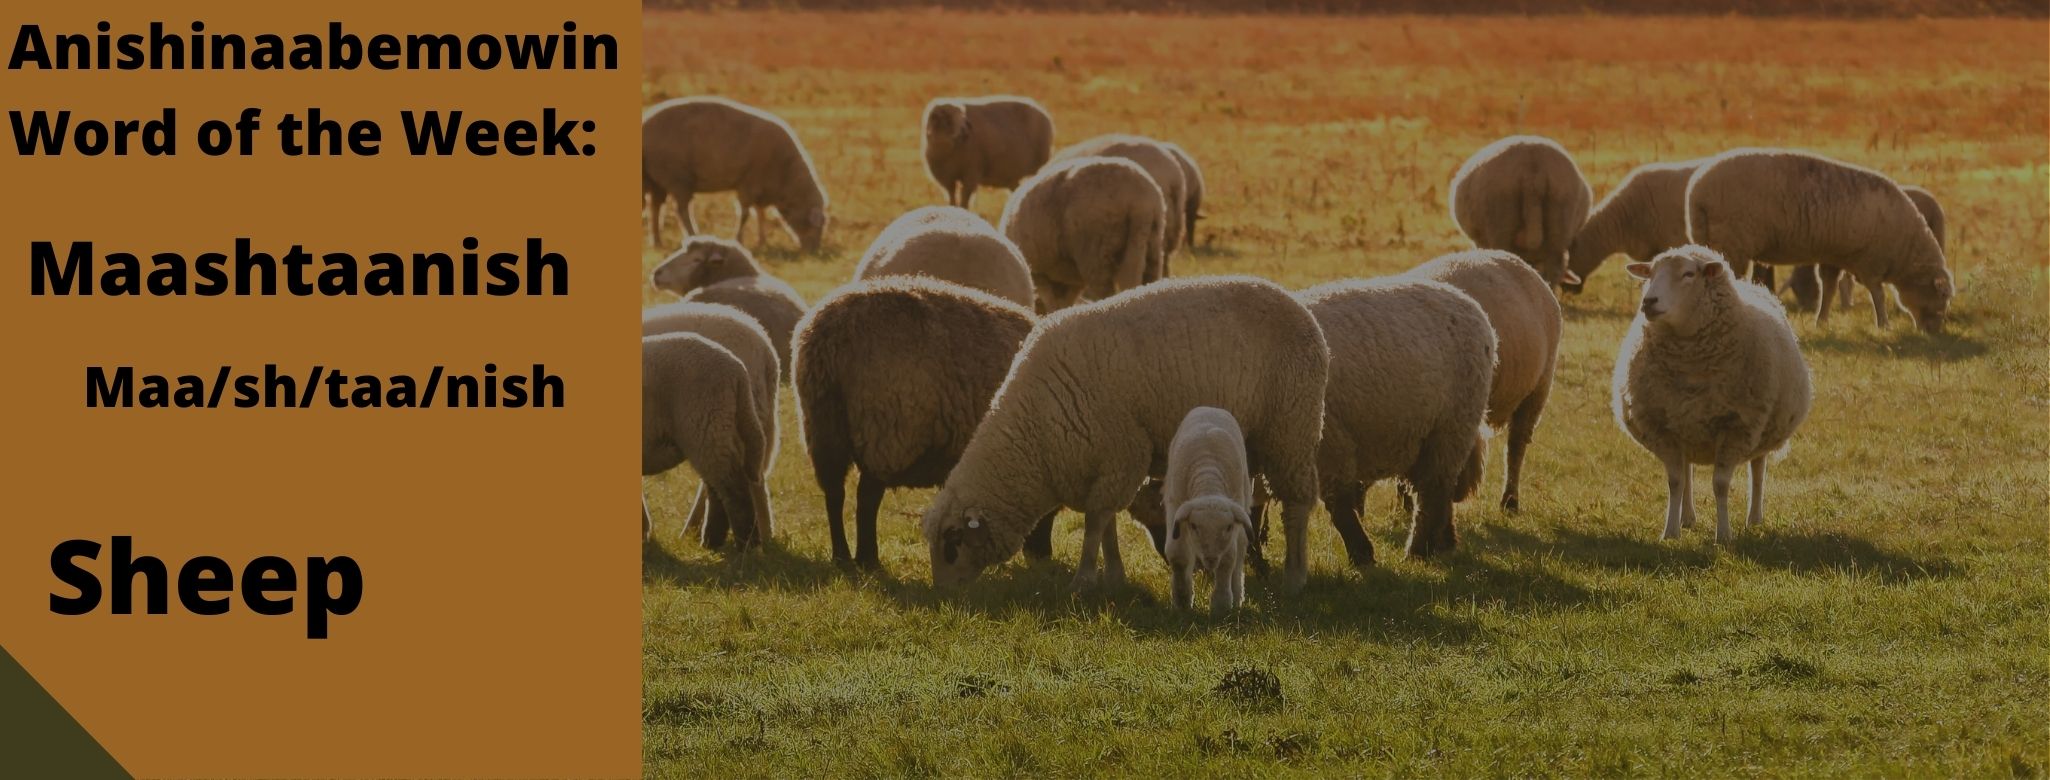 Anishinaabemowin Word of the Week Maashtaanish Sheep